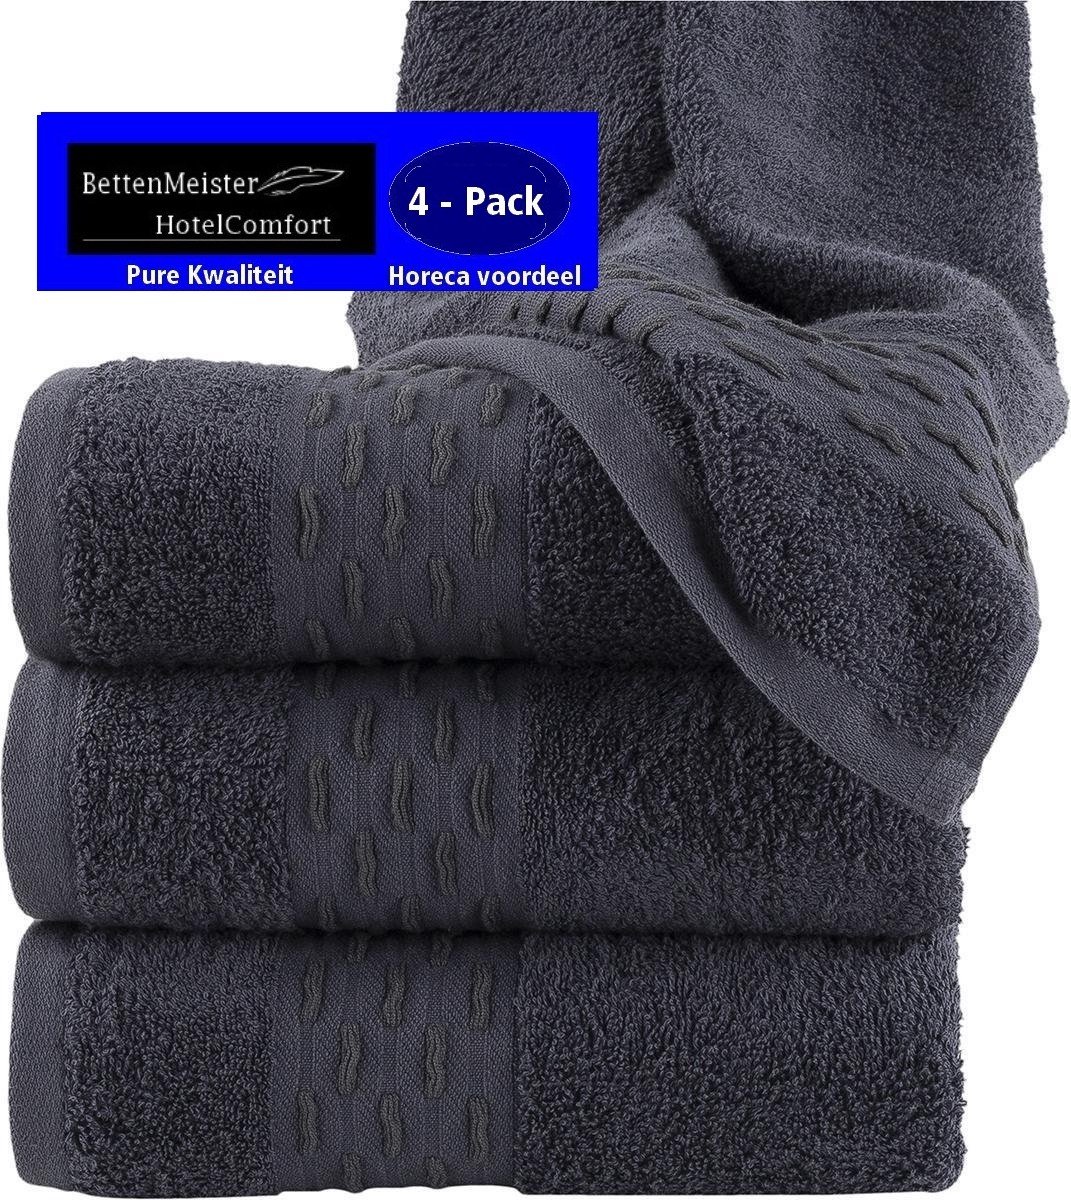 4 Pack Handdoeken - (4 stuks) golf jacquard blauw/antraciet 50x100 cm - Katoen badstof